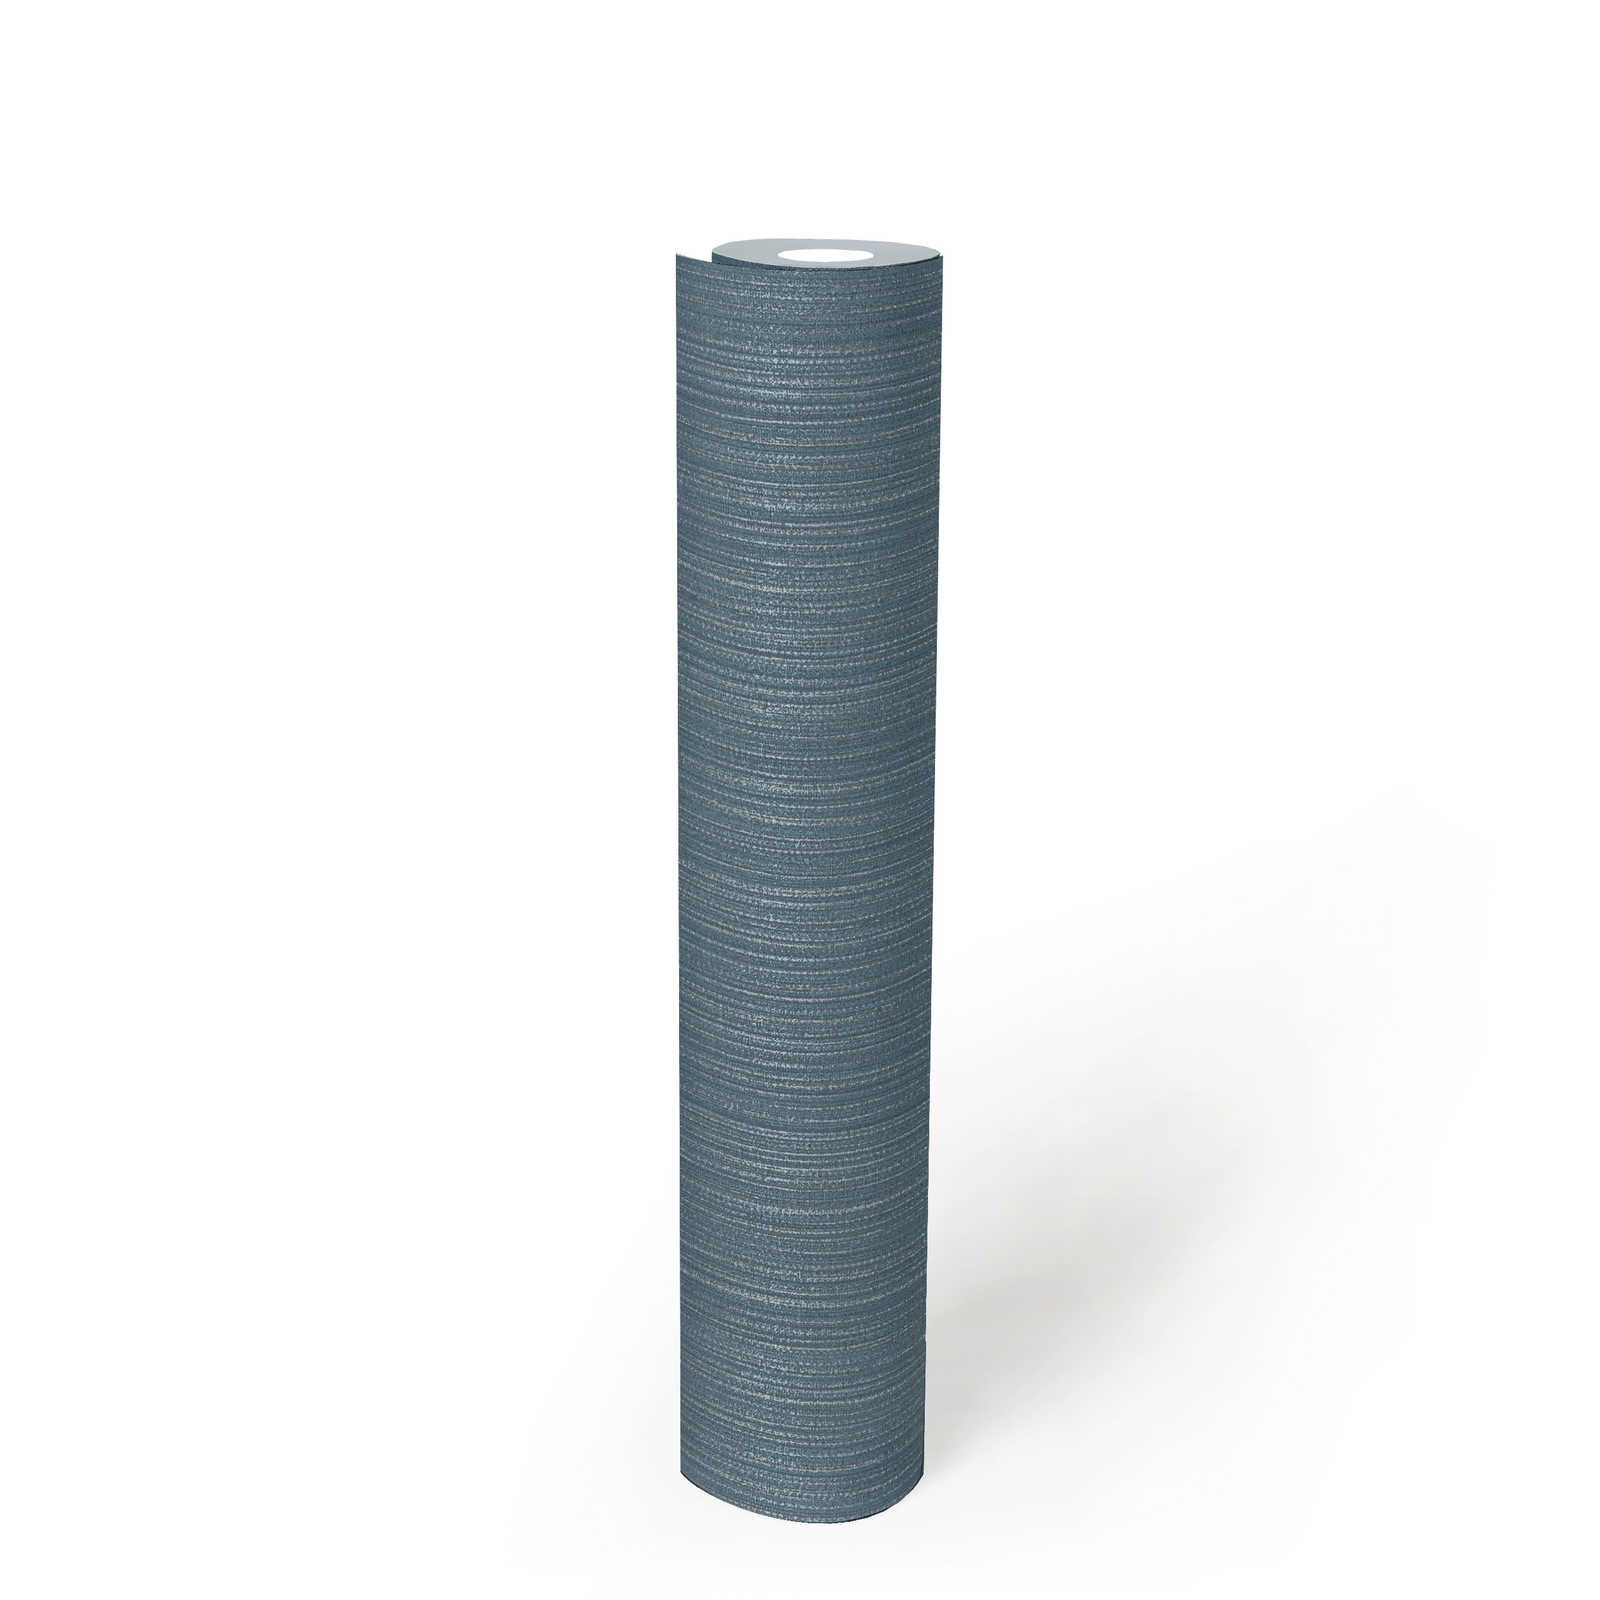             Papier peint uni gris-bleu aspect textile - bleu, métallisé
        